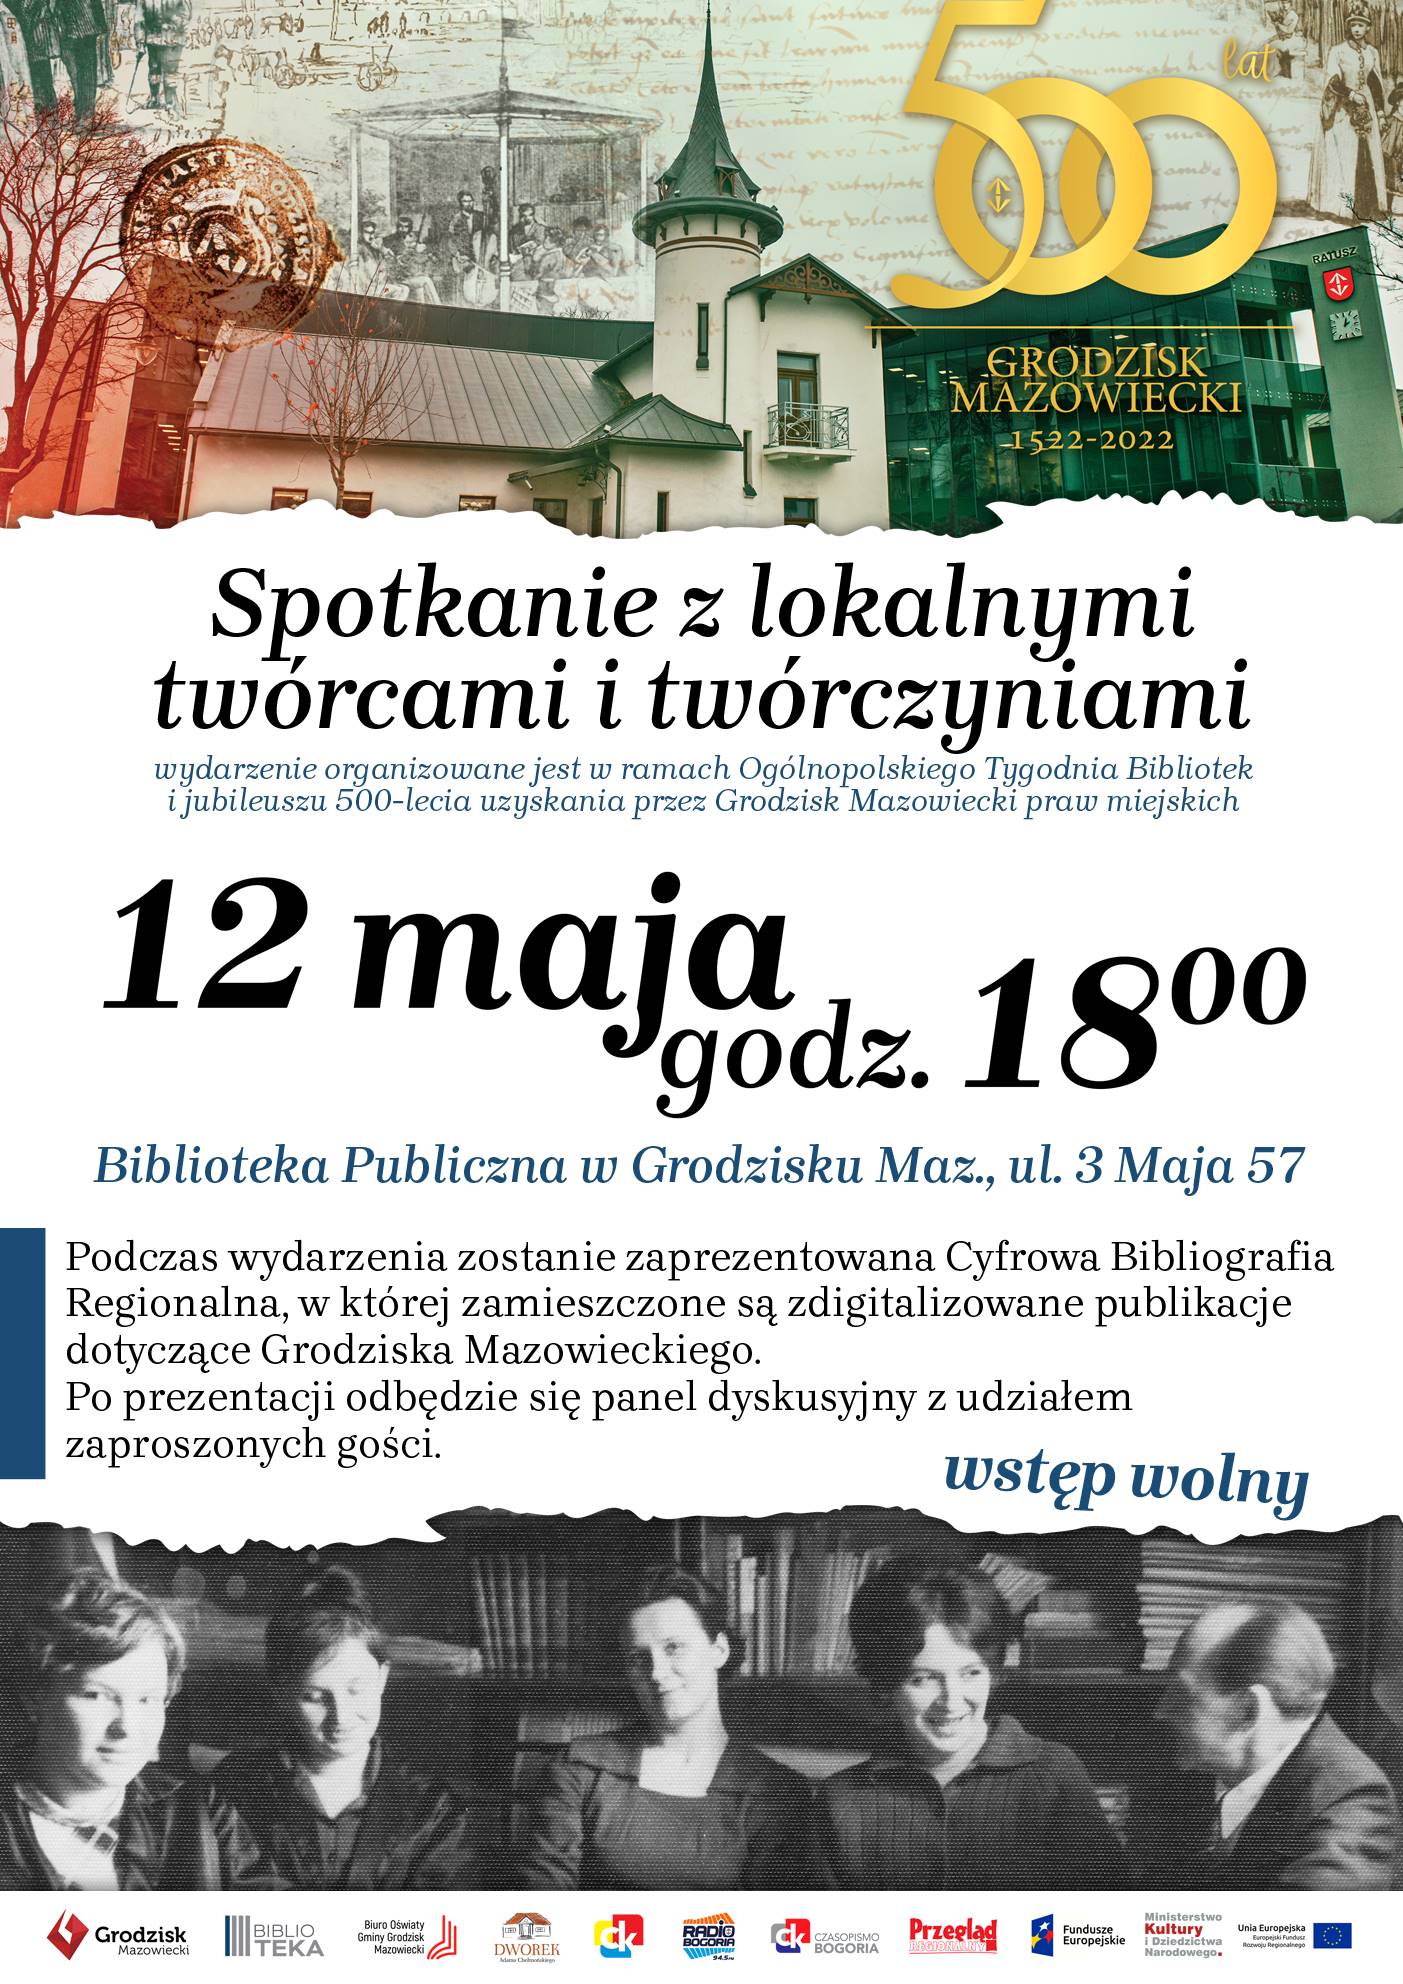 Plakat Spotkanie z lokalnymi twórcwami i twórczyniami 12 maja godz. 18:00, na górze willa Niepsodzianka i ratusz, na dole czarno-białe zdjęcie przedstawiające cztery kobiety i mężczyznę w bibliotece. 